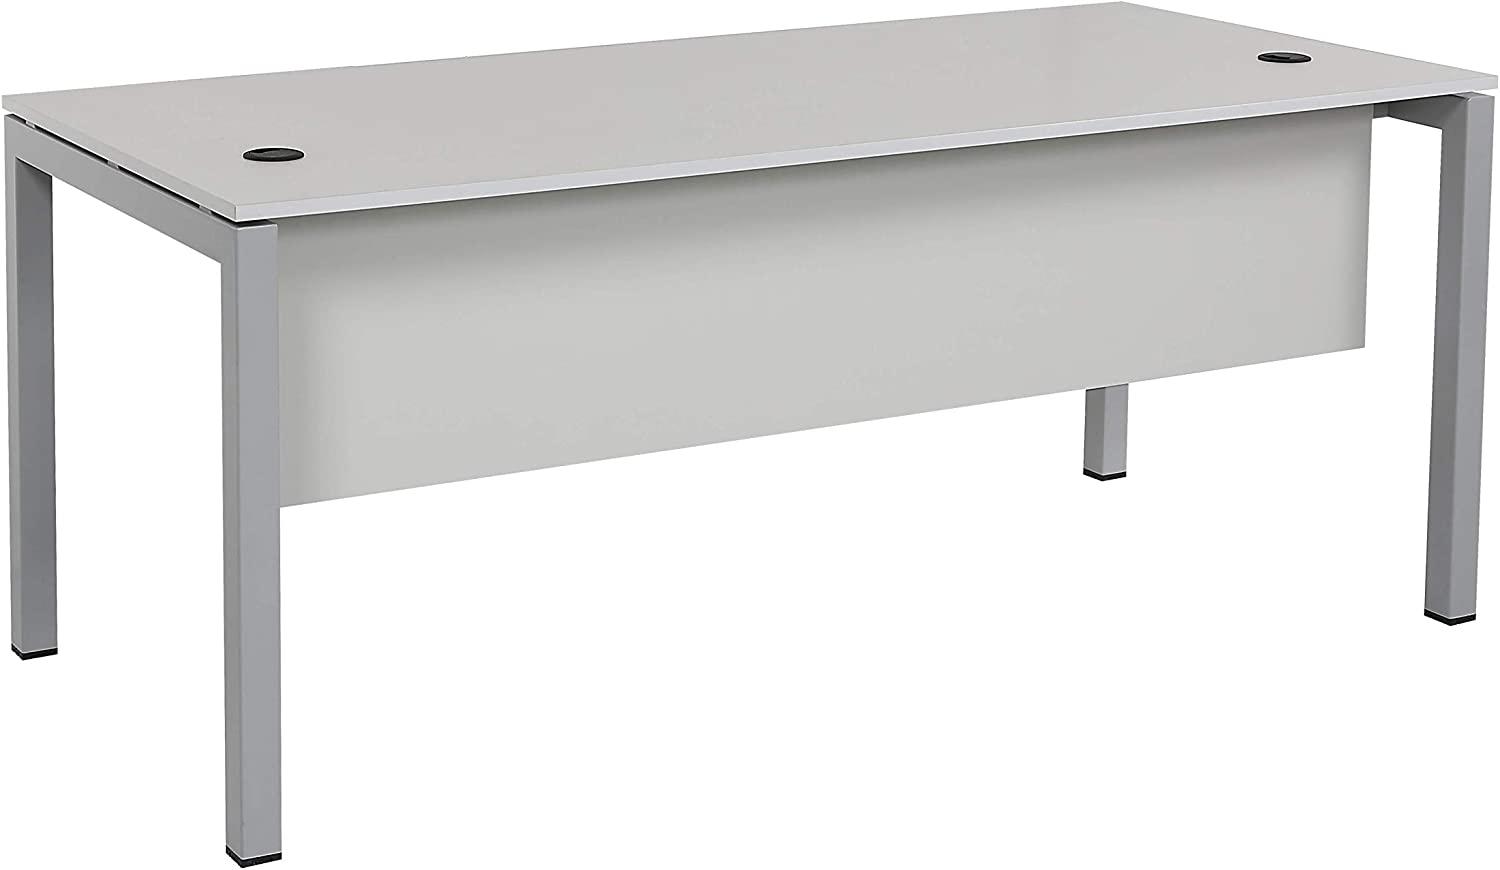 Furni24 Schreibtisch Tetra fürs Arbeitszimmer und Home Office - Großer laminierter Computertisch aus Holz, einfache Montage (180 x 80 x 75 cm, Grau) Bild 1